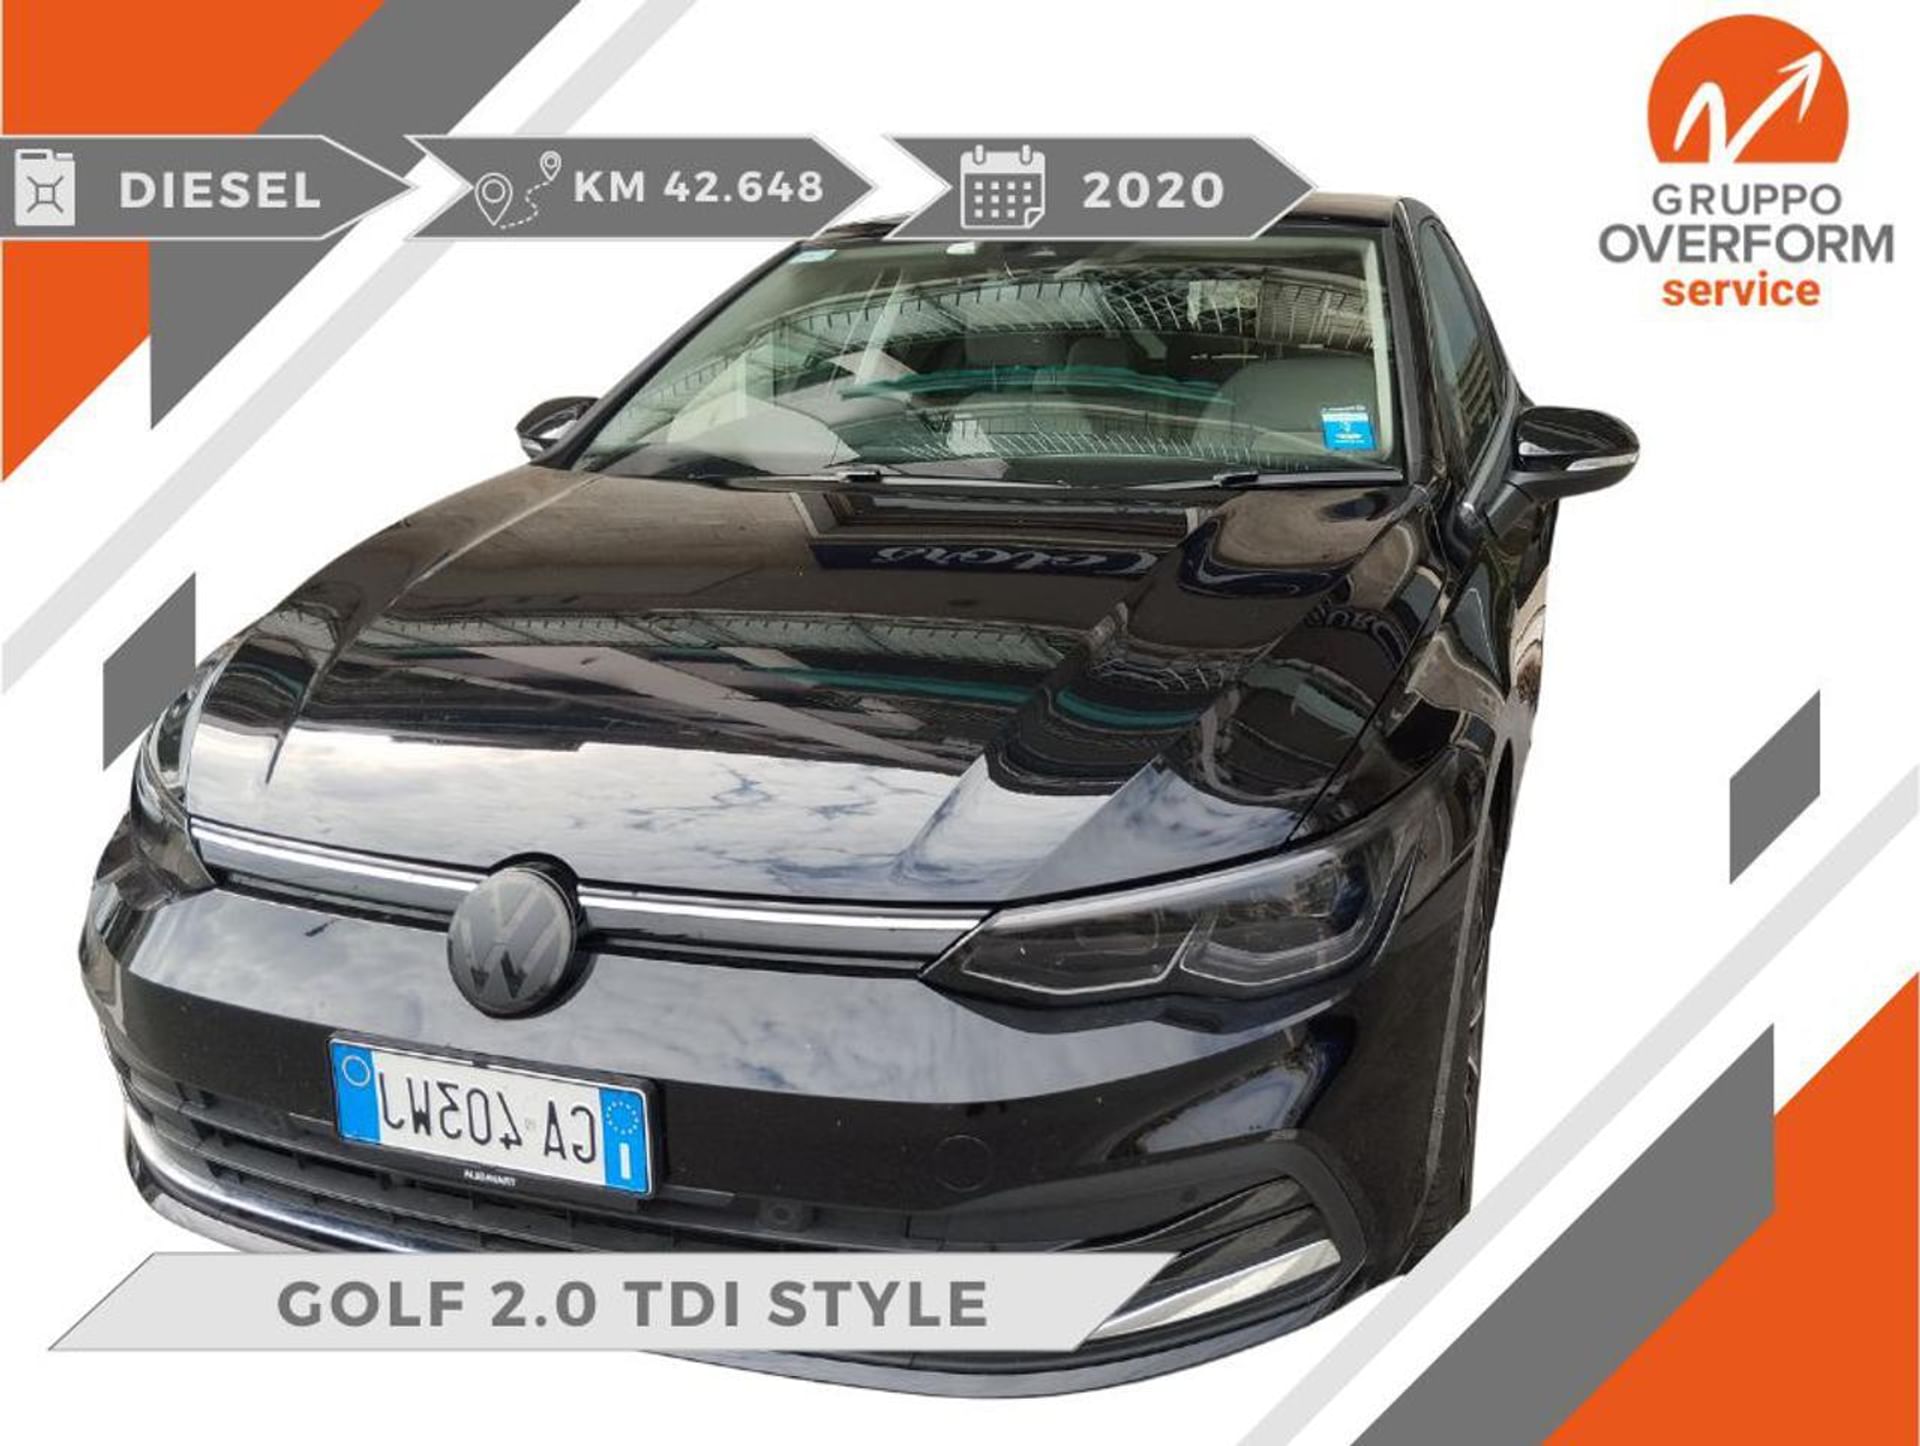 Volkswagen Golf 2.0 TDI 150 CV